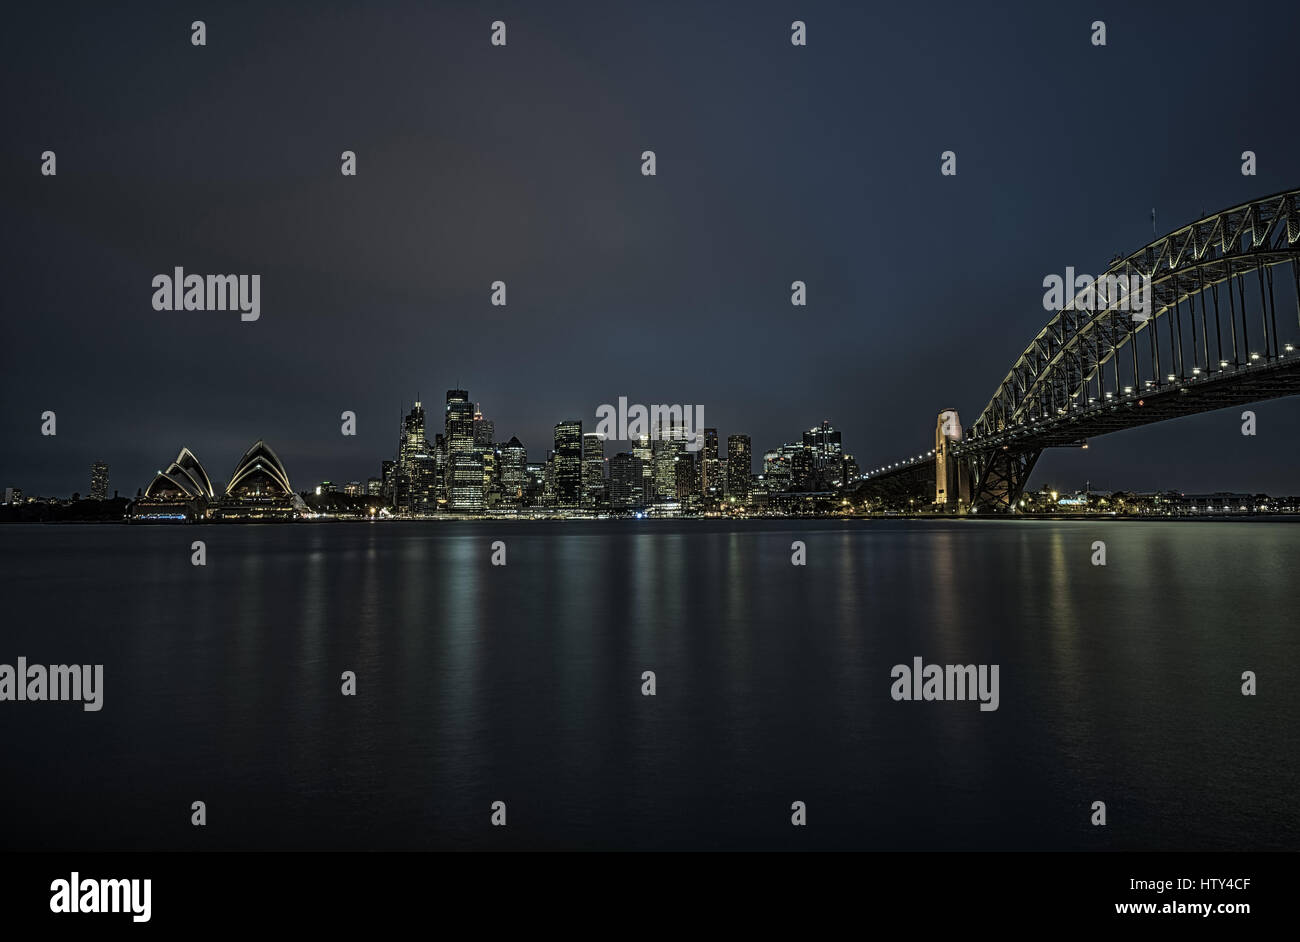 Le centre-ville de Sydney avec l'Opéra et le Harbour Bridge at night, NSW, Australie. Longue exposition. Banque D'Images